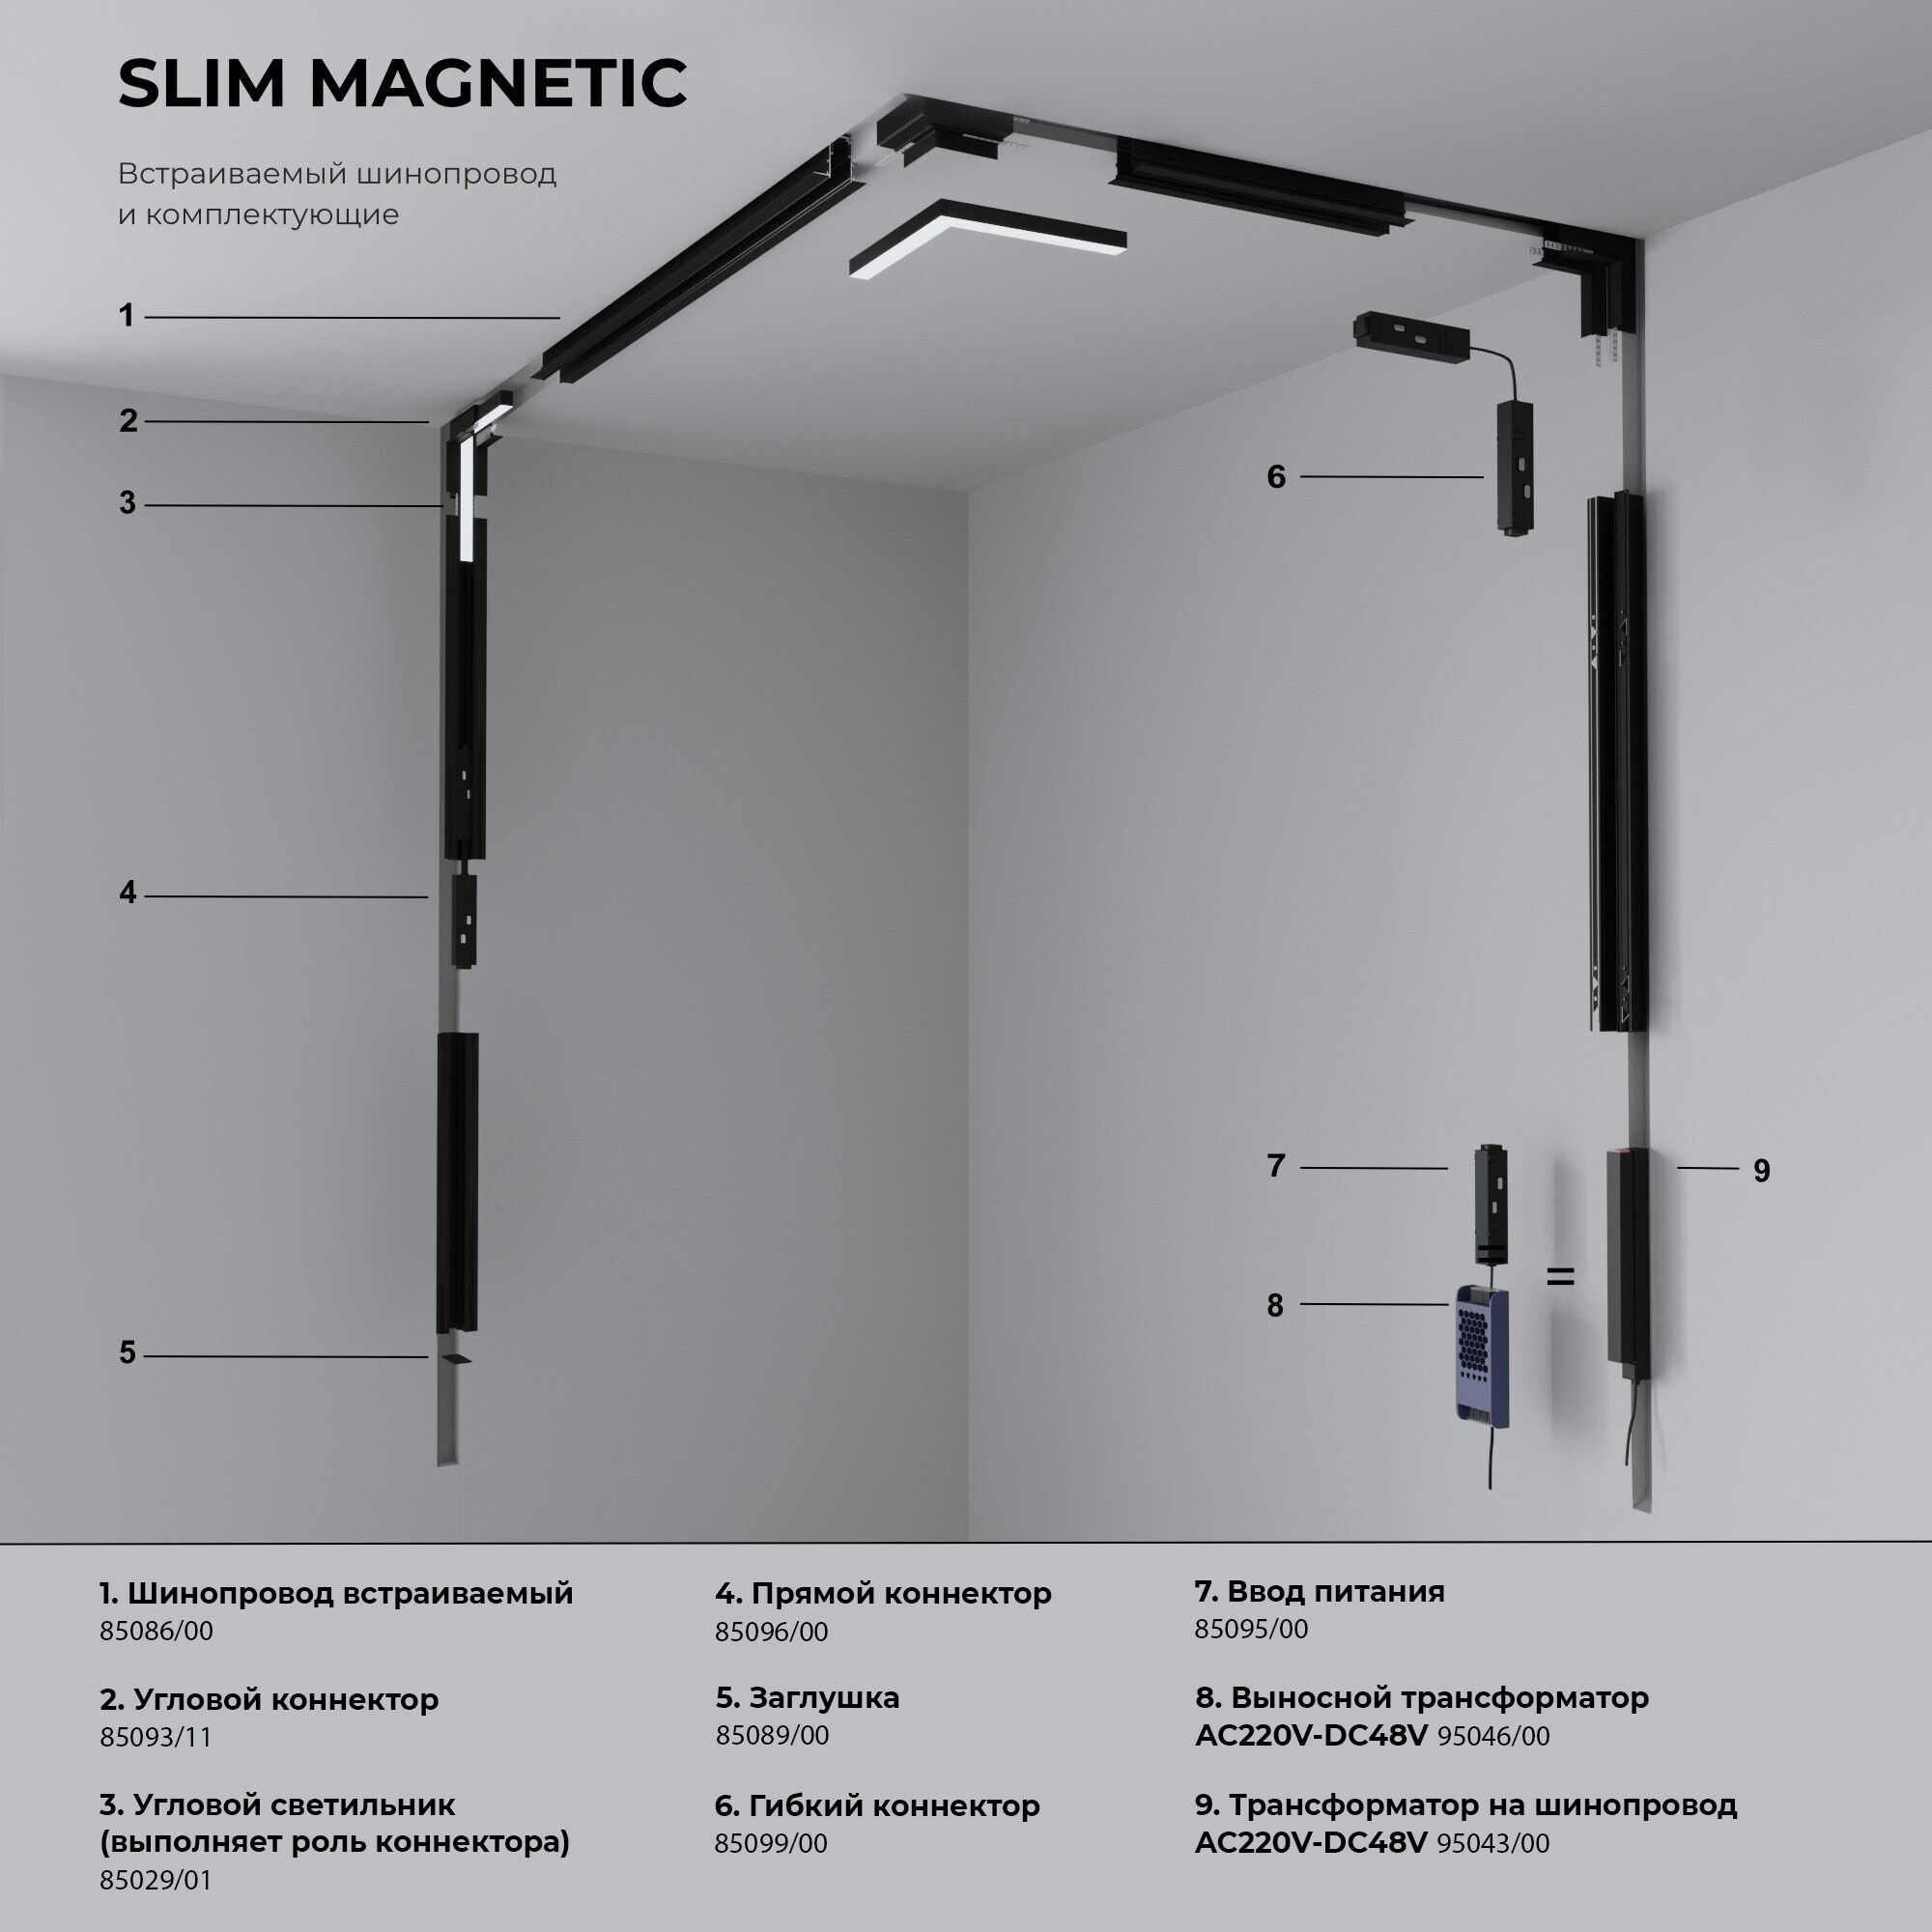 Slim Magnetic Шинопровод встраиваемый с местом под светодиодную ленту чёрный 2м 85132/00